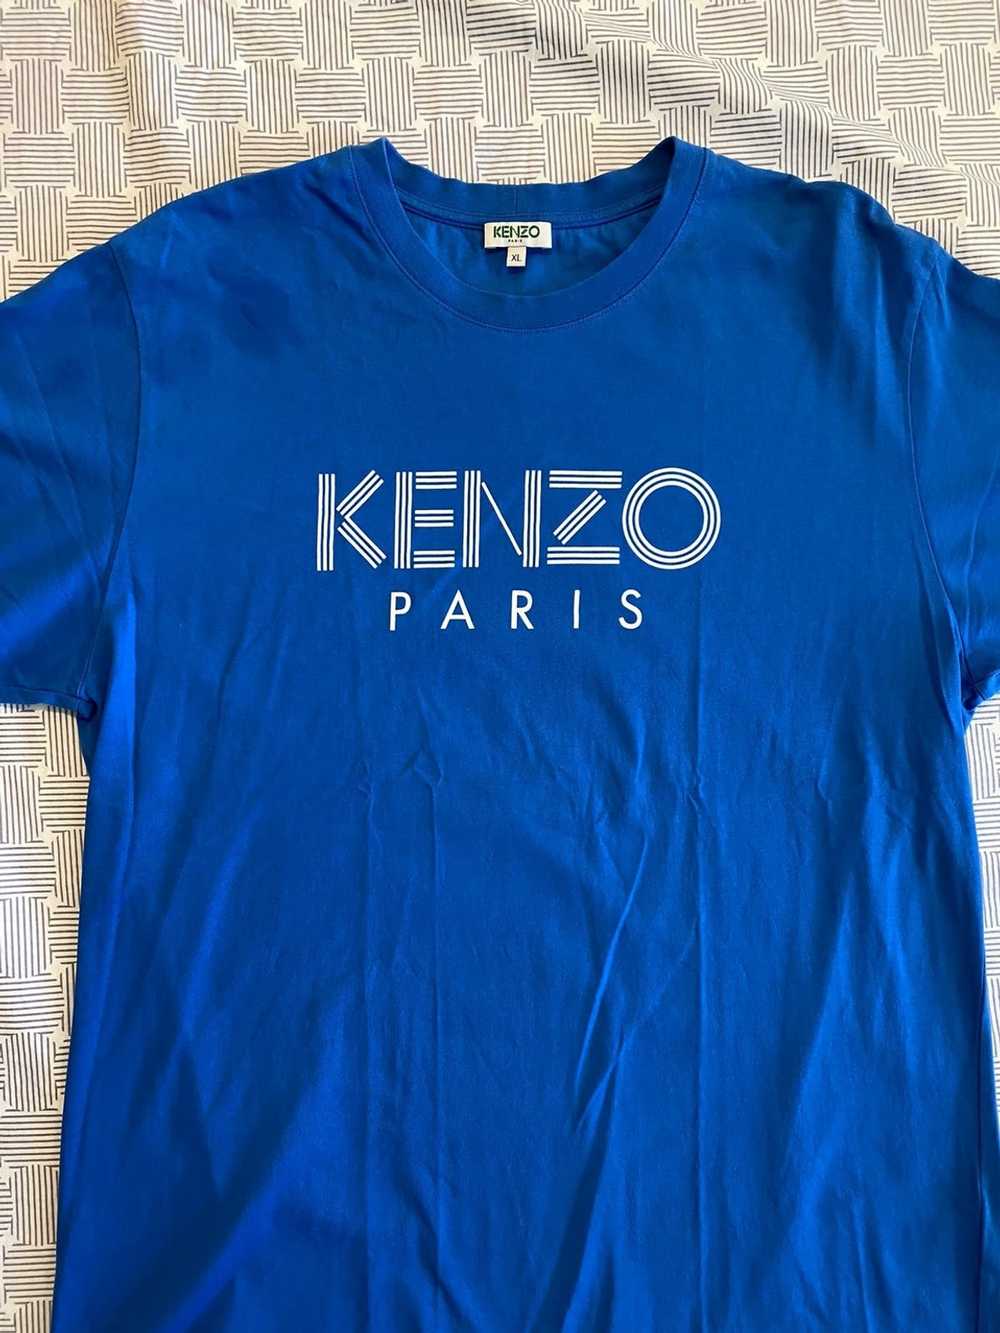 Kenzo Kenzie Paris Tee - Size XL - image 2